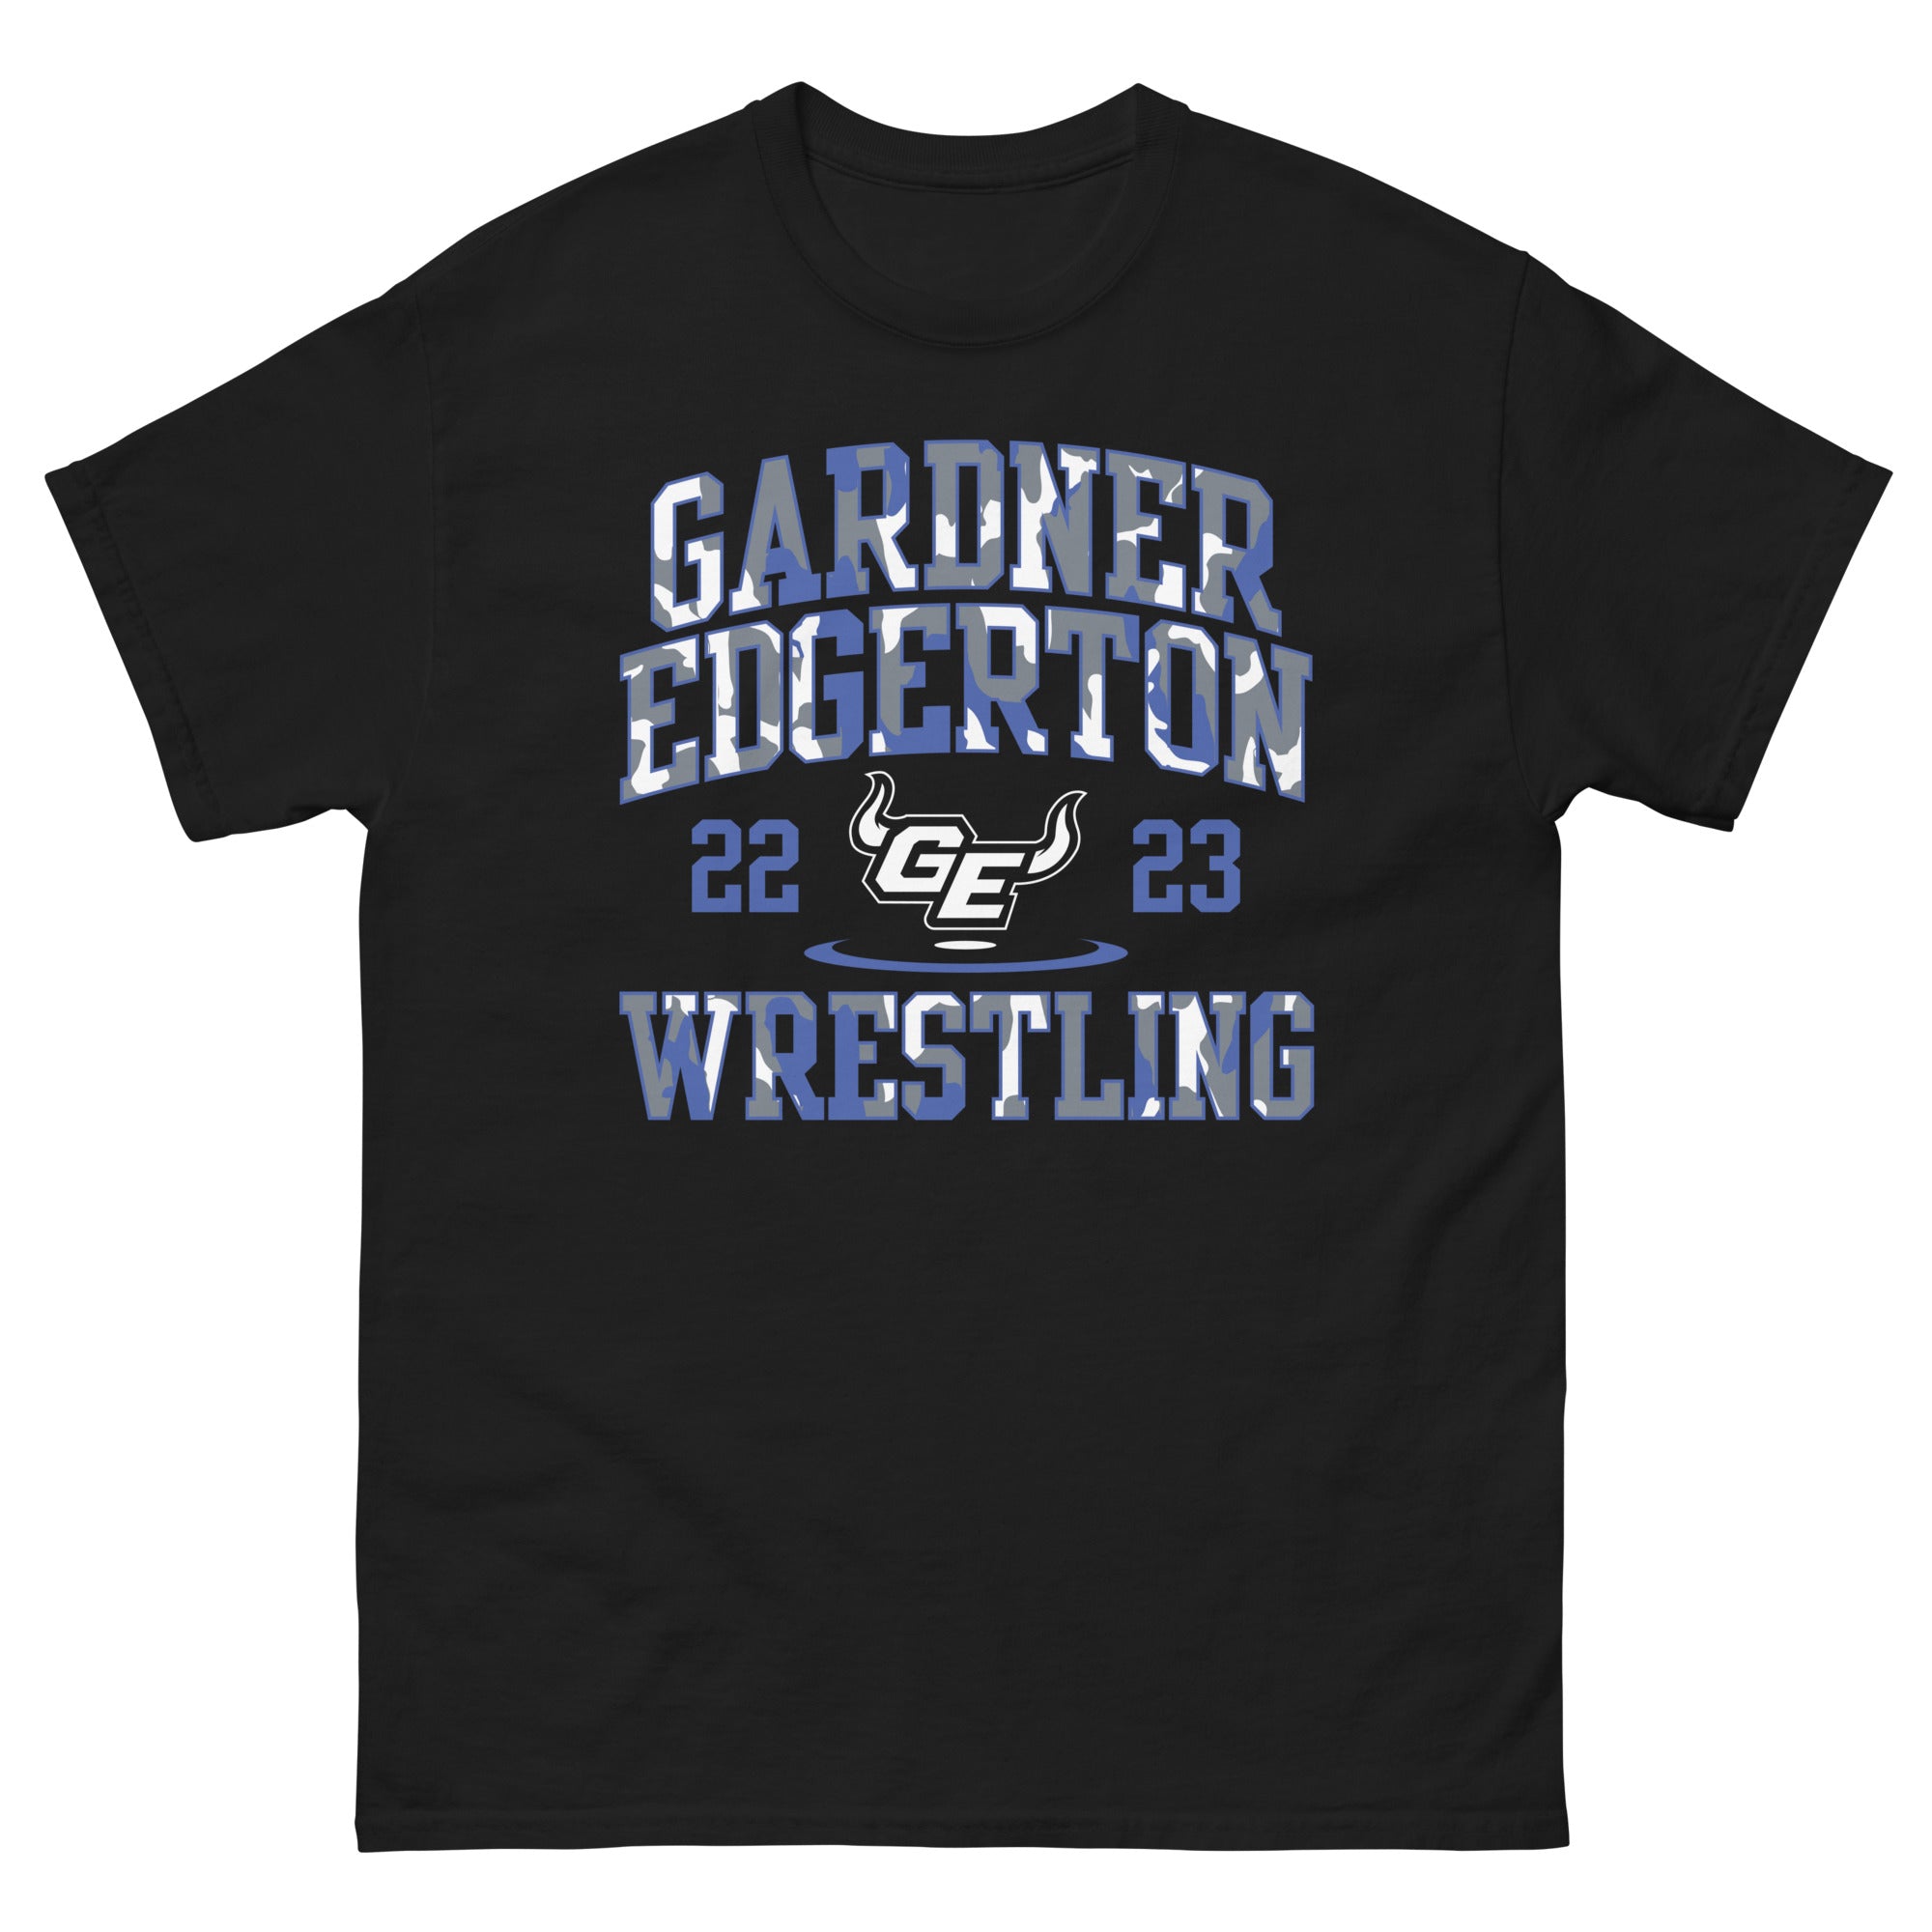 22/23 Gardner Edgerton Wrestling Men's classic tee